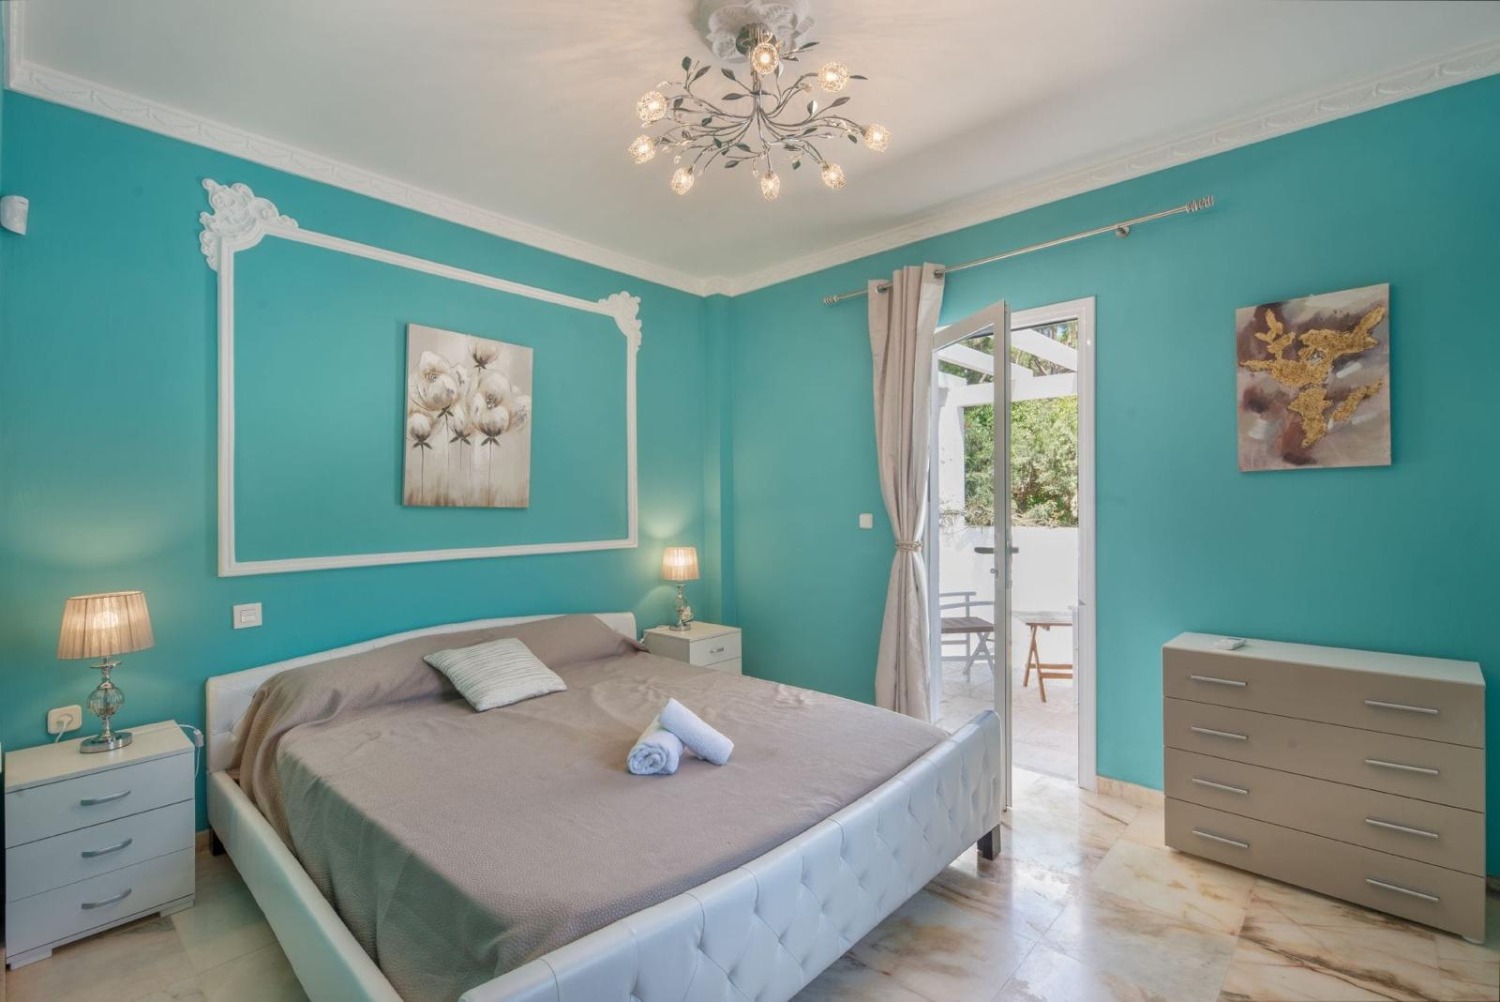 9 camere da letto matrimoniali - 7 bagni - posti letto fino a 20 persone - Marbella East